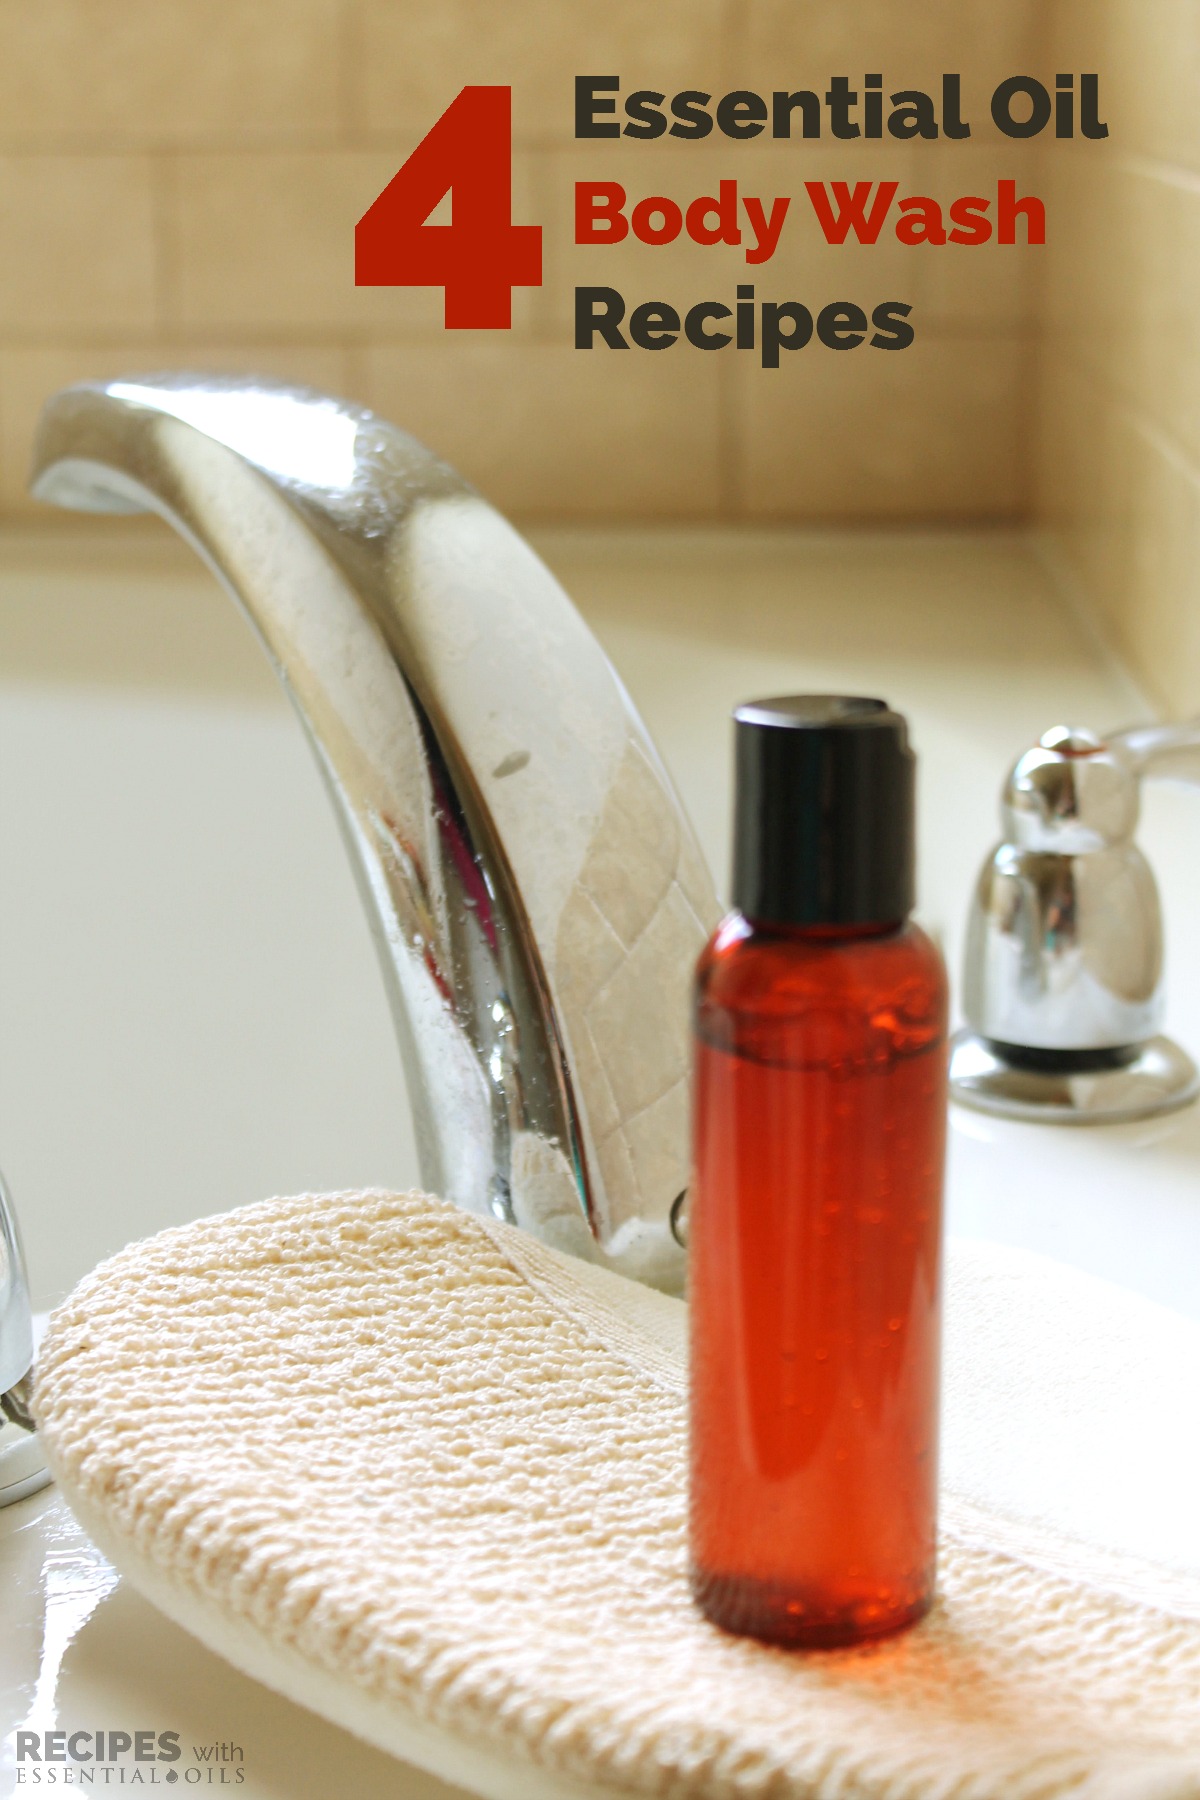 4 Essential Oil Body Wash Recipes from RecipeswithEssentialOils.com